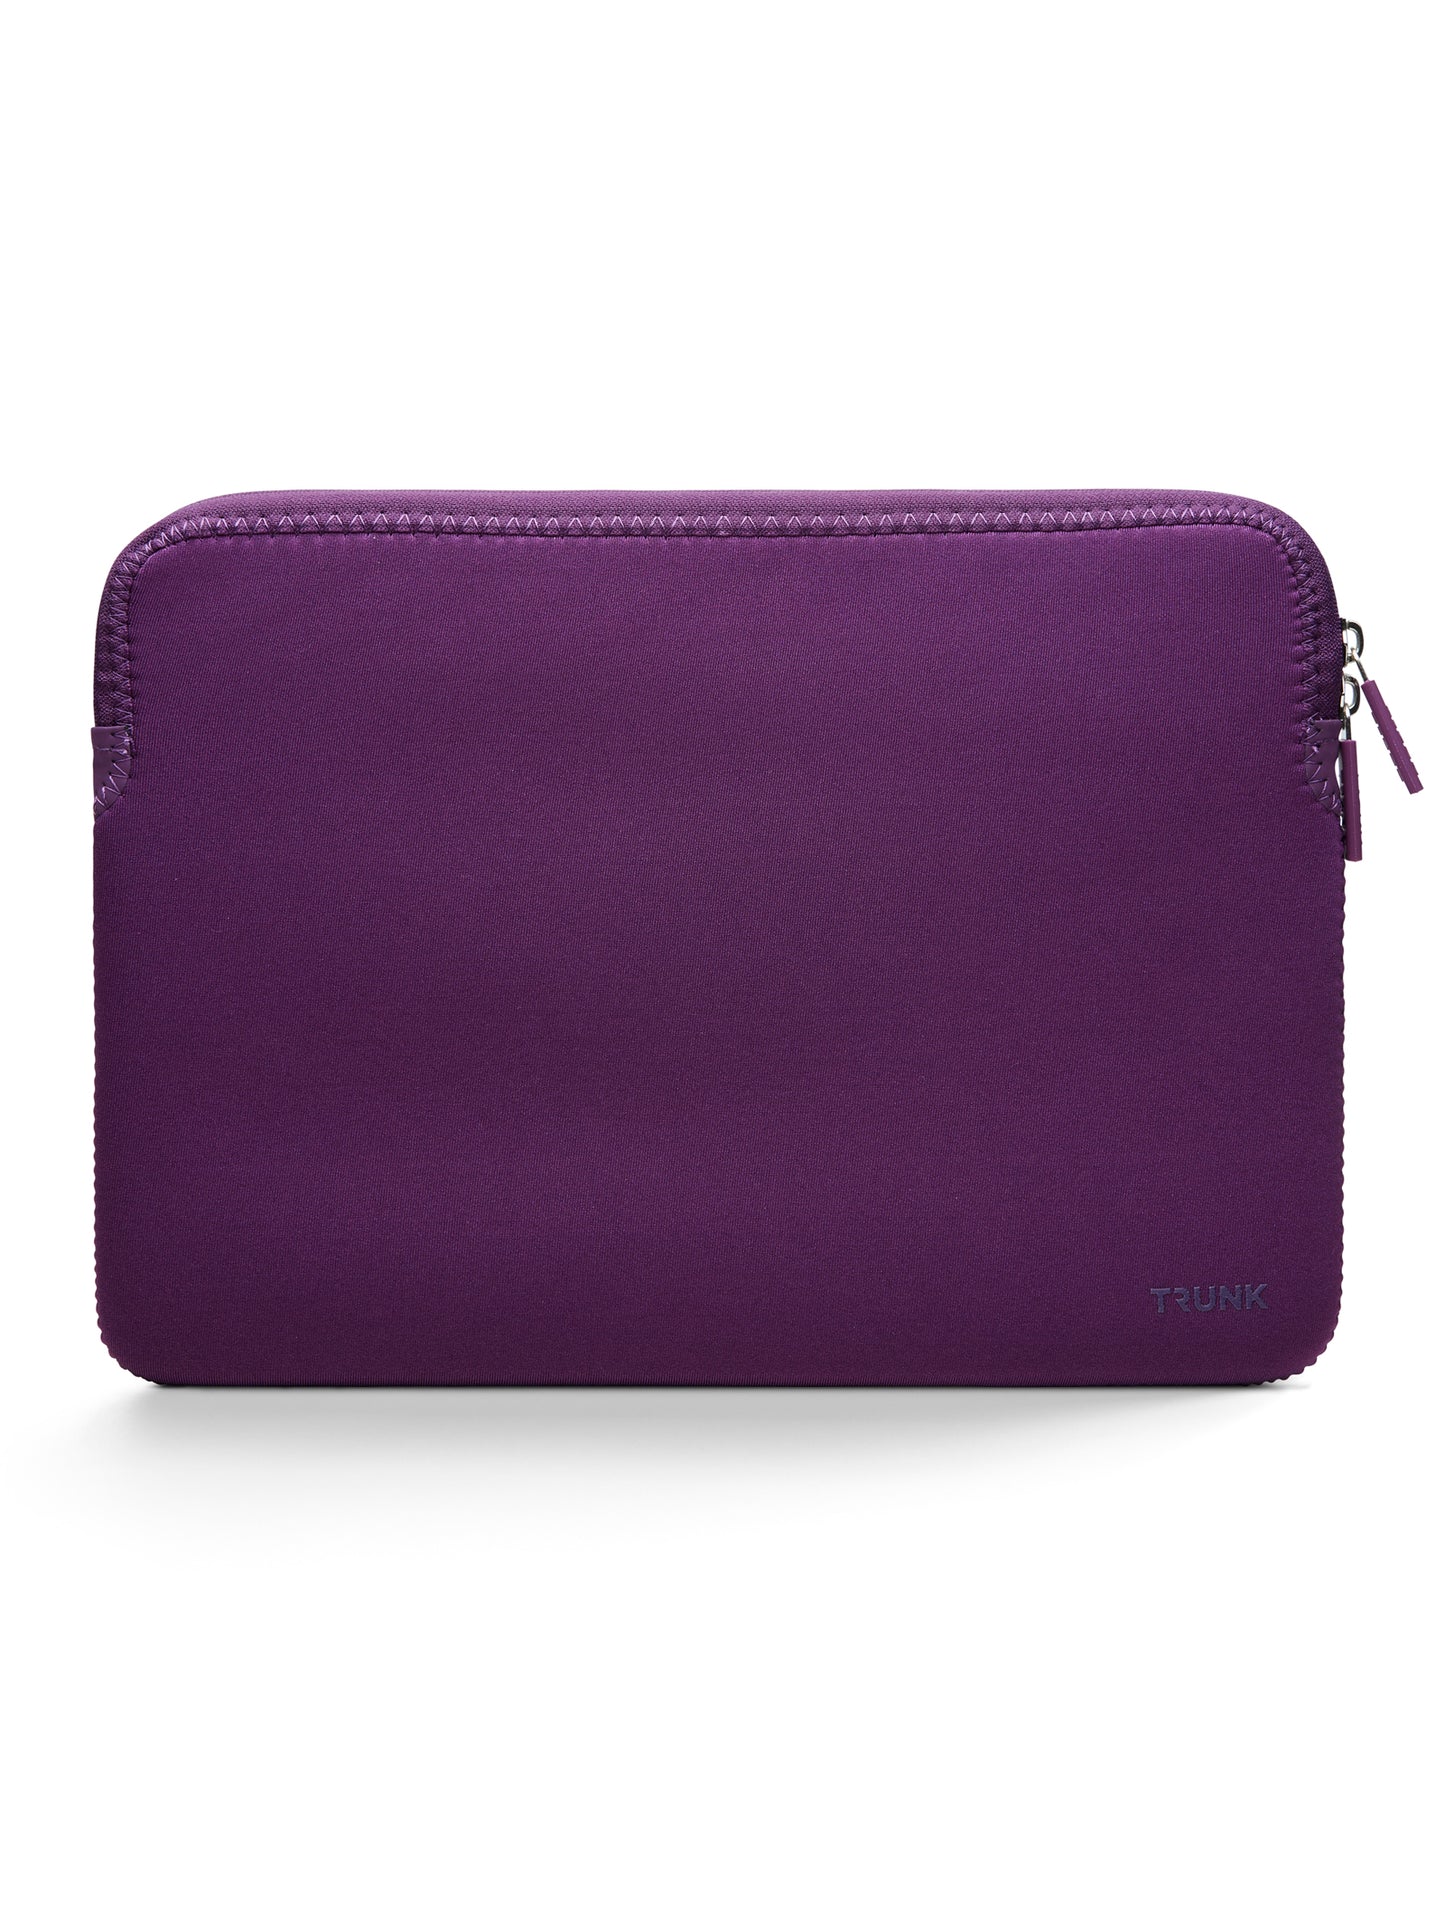 Trunk Neopren Sleeve für MacBook Air / Pro 13", Violett